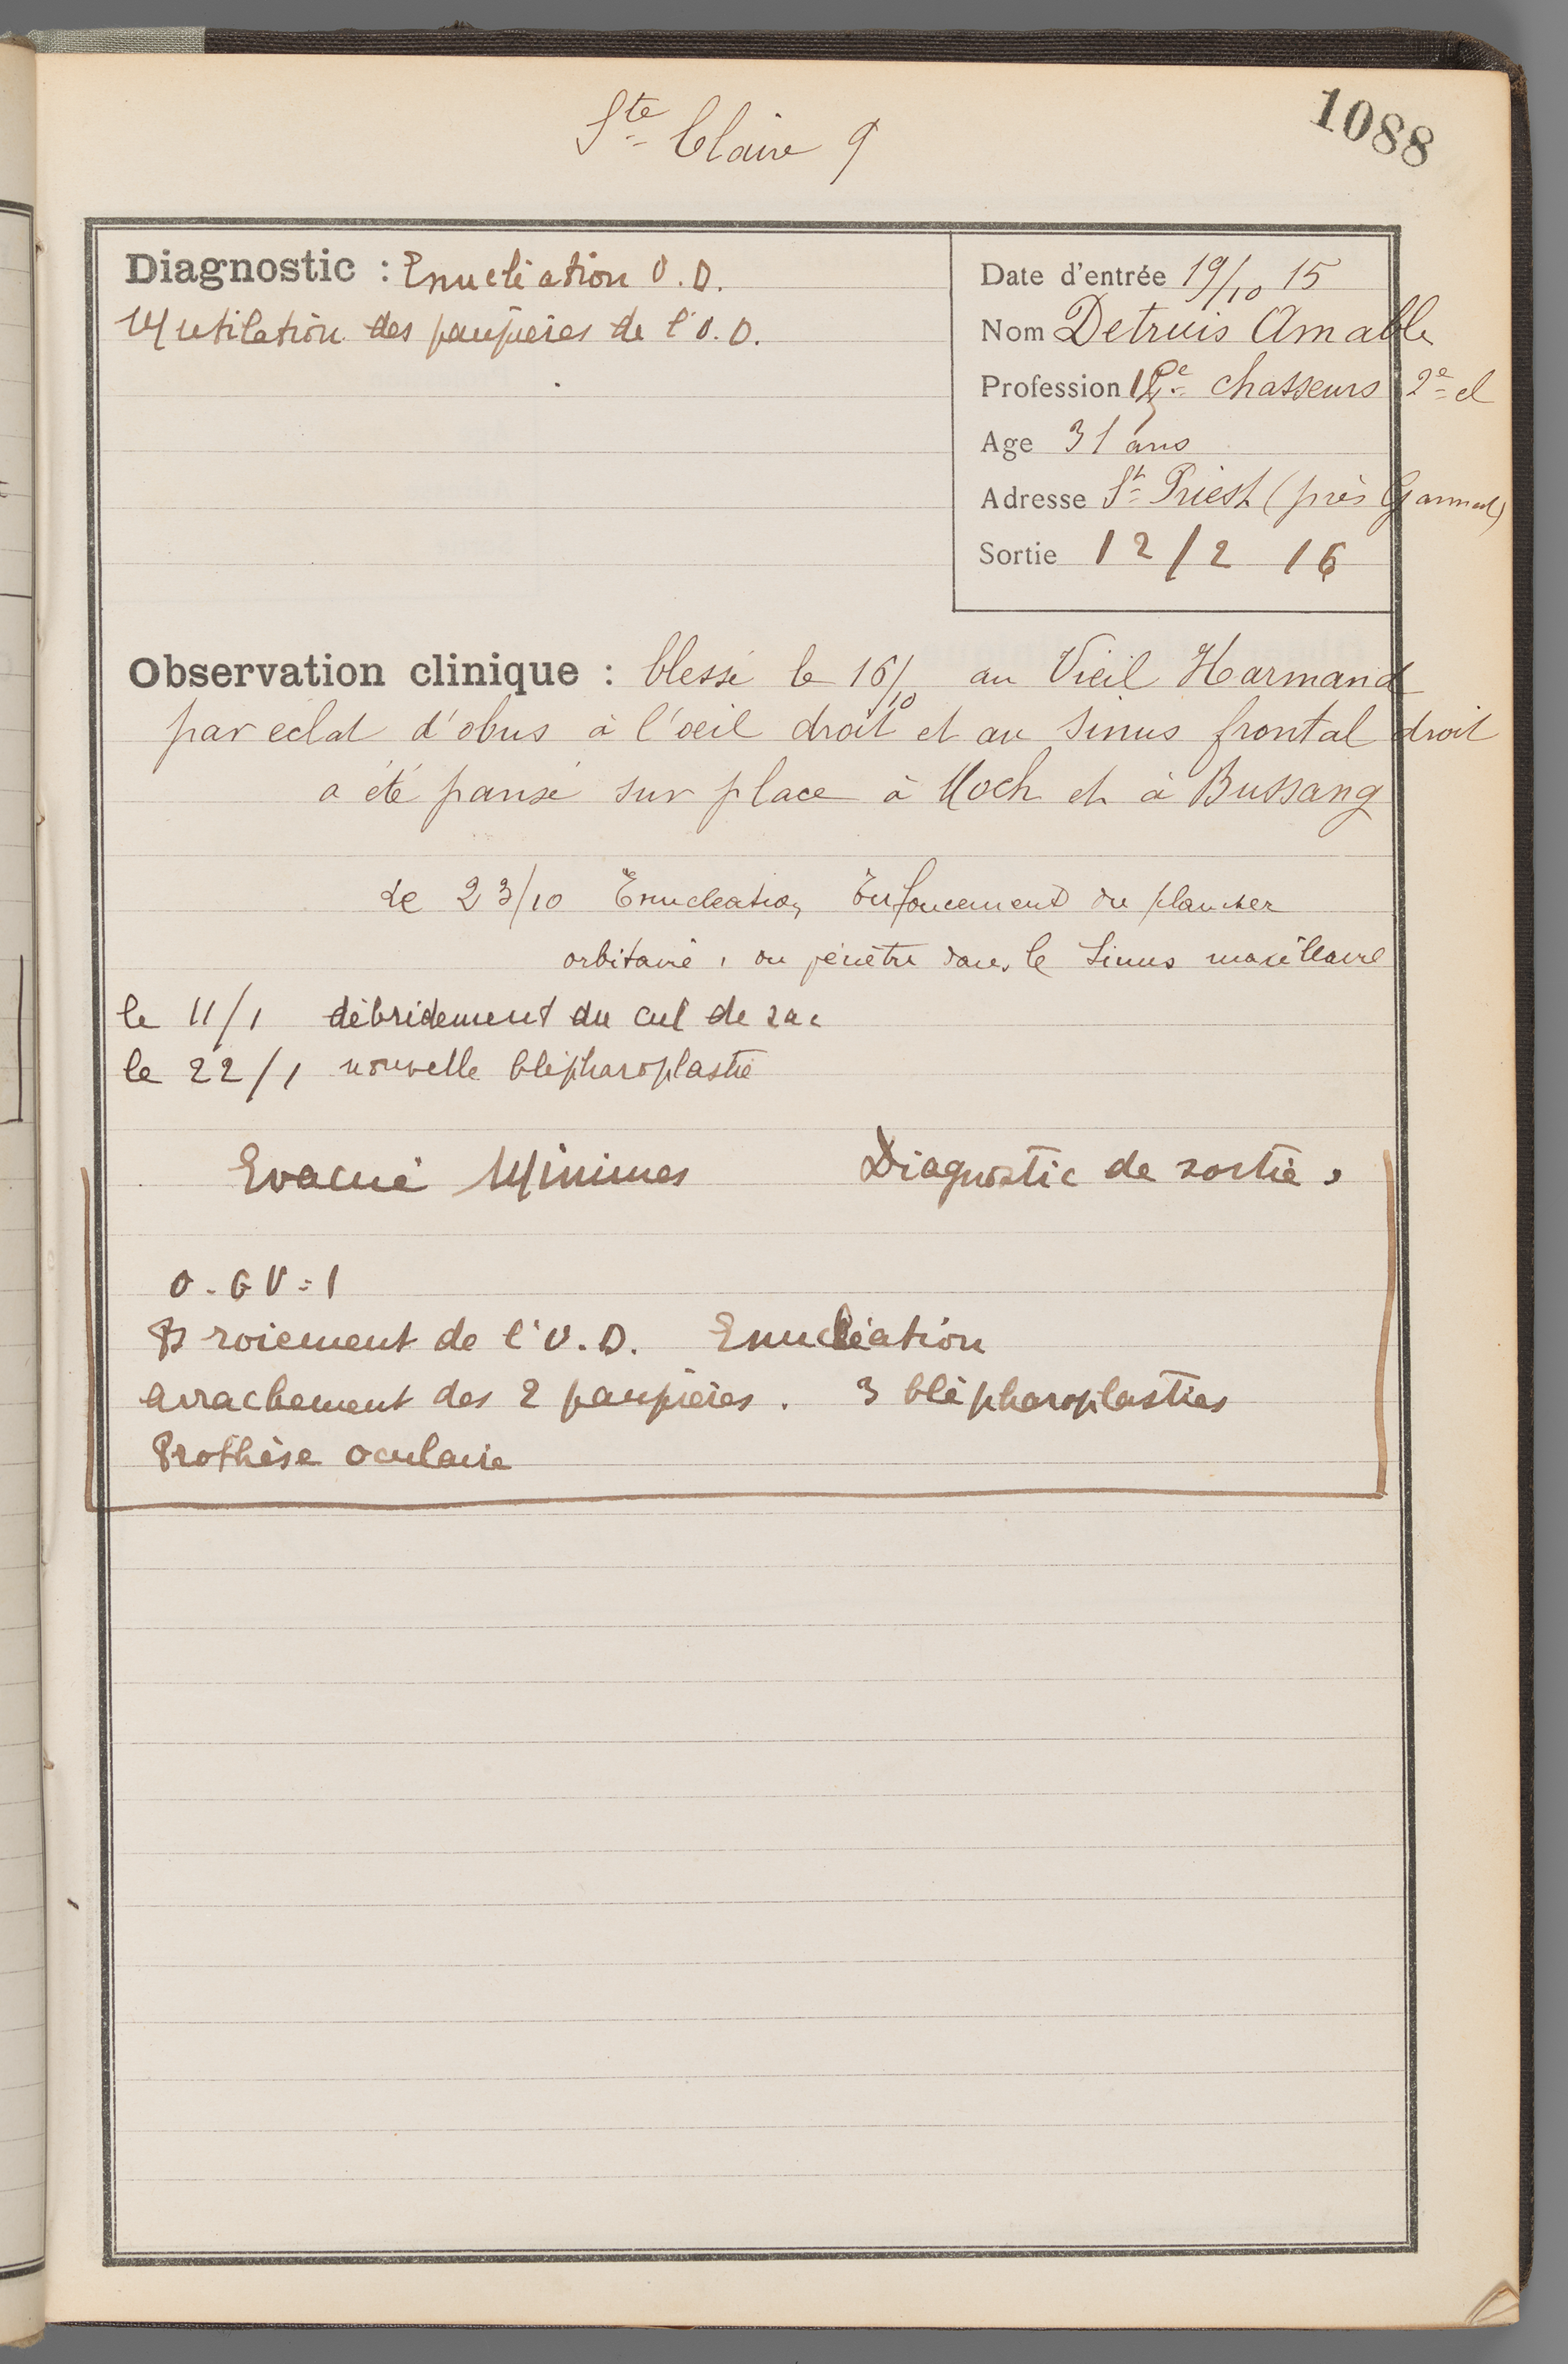 Registre d’observations médicales (ROM), Service du professeur Rollet, blessés militaires hospitalisés, 1915-1916 HCL/AC/1R/1303